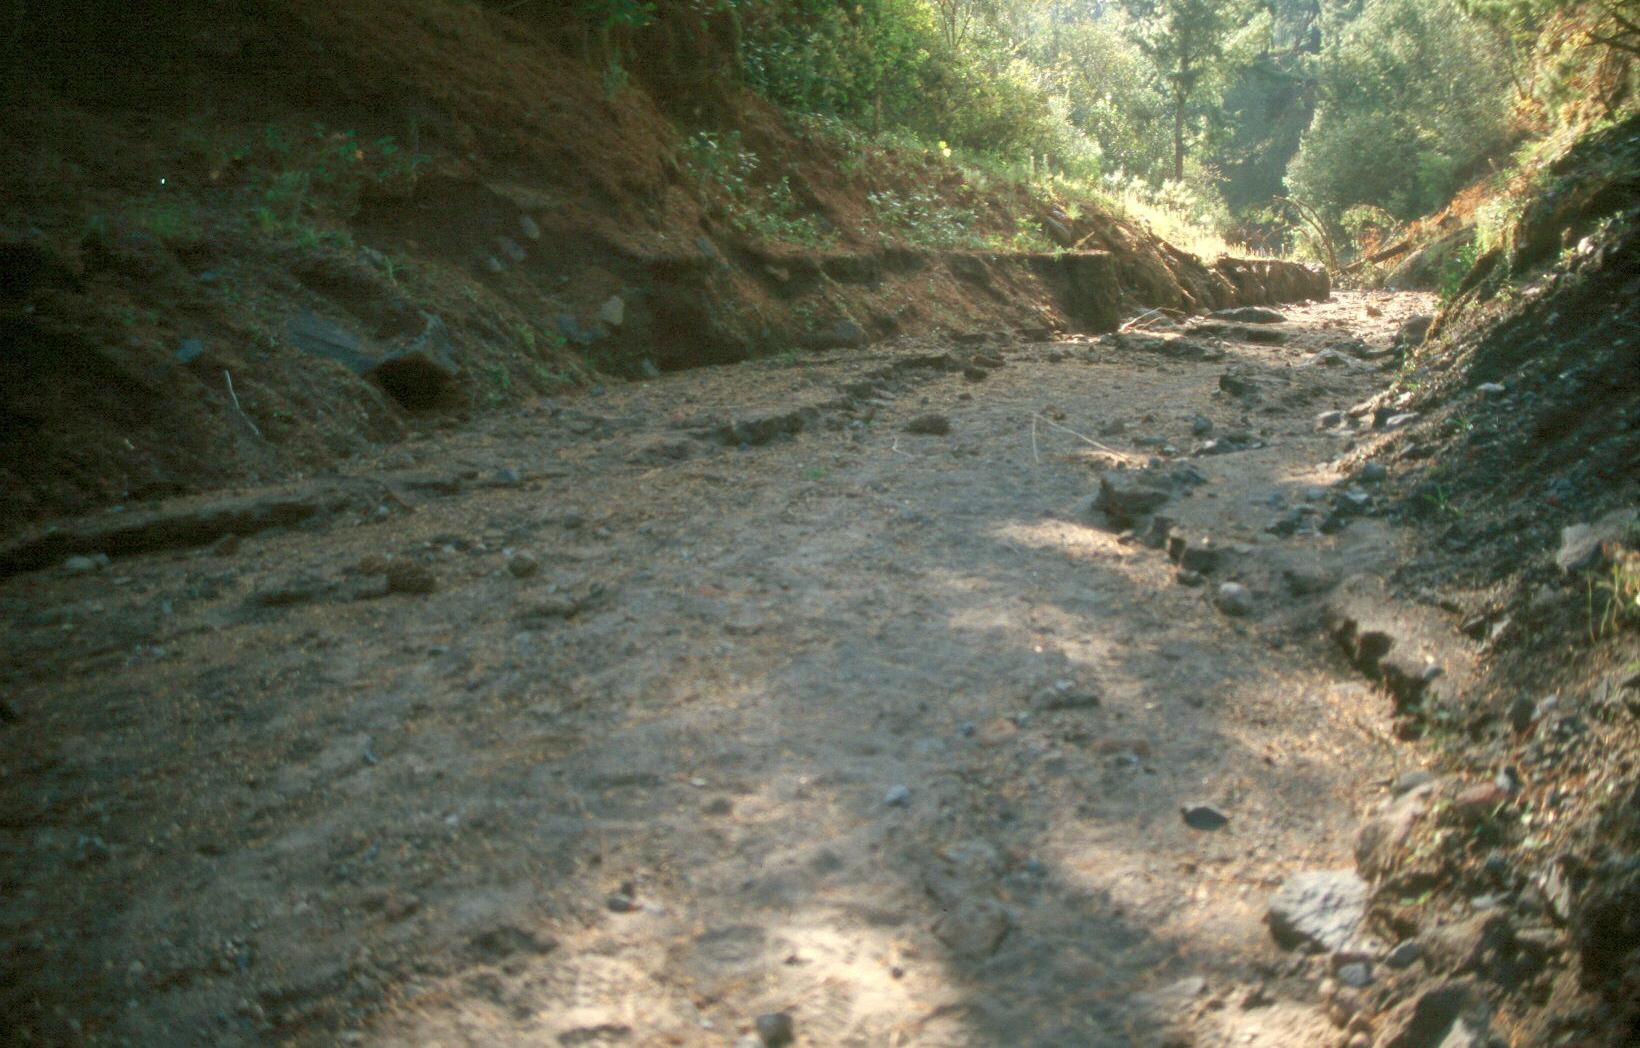 Barranca de Huiloac zona habitual de circulación de lahares